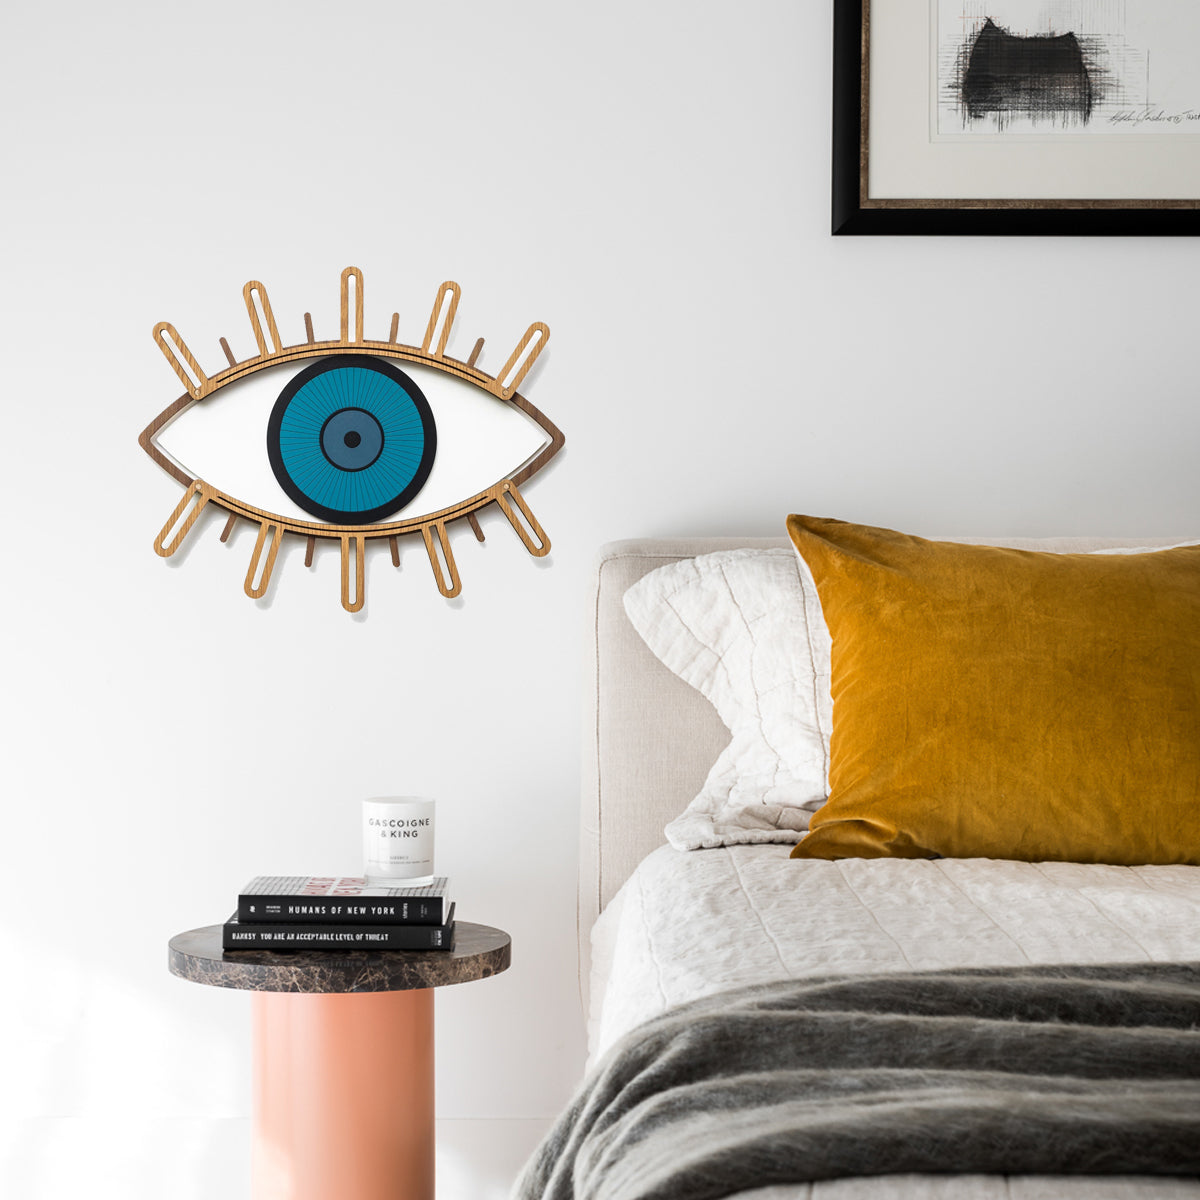 Eyelash and Eye Wall Decor by Wood Wall Art at the Bedroom